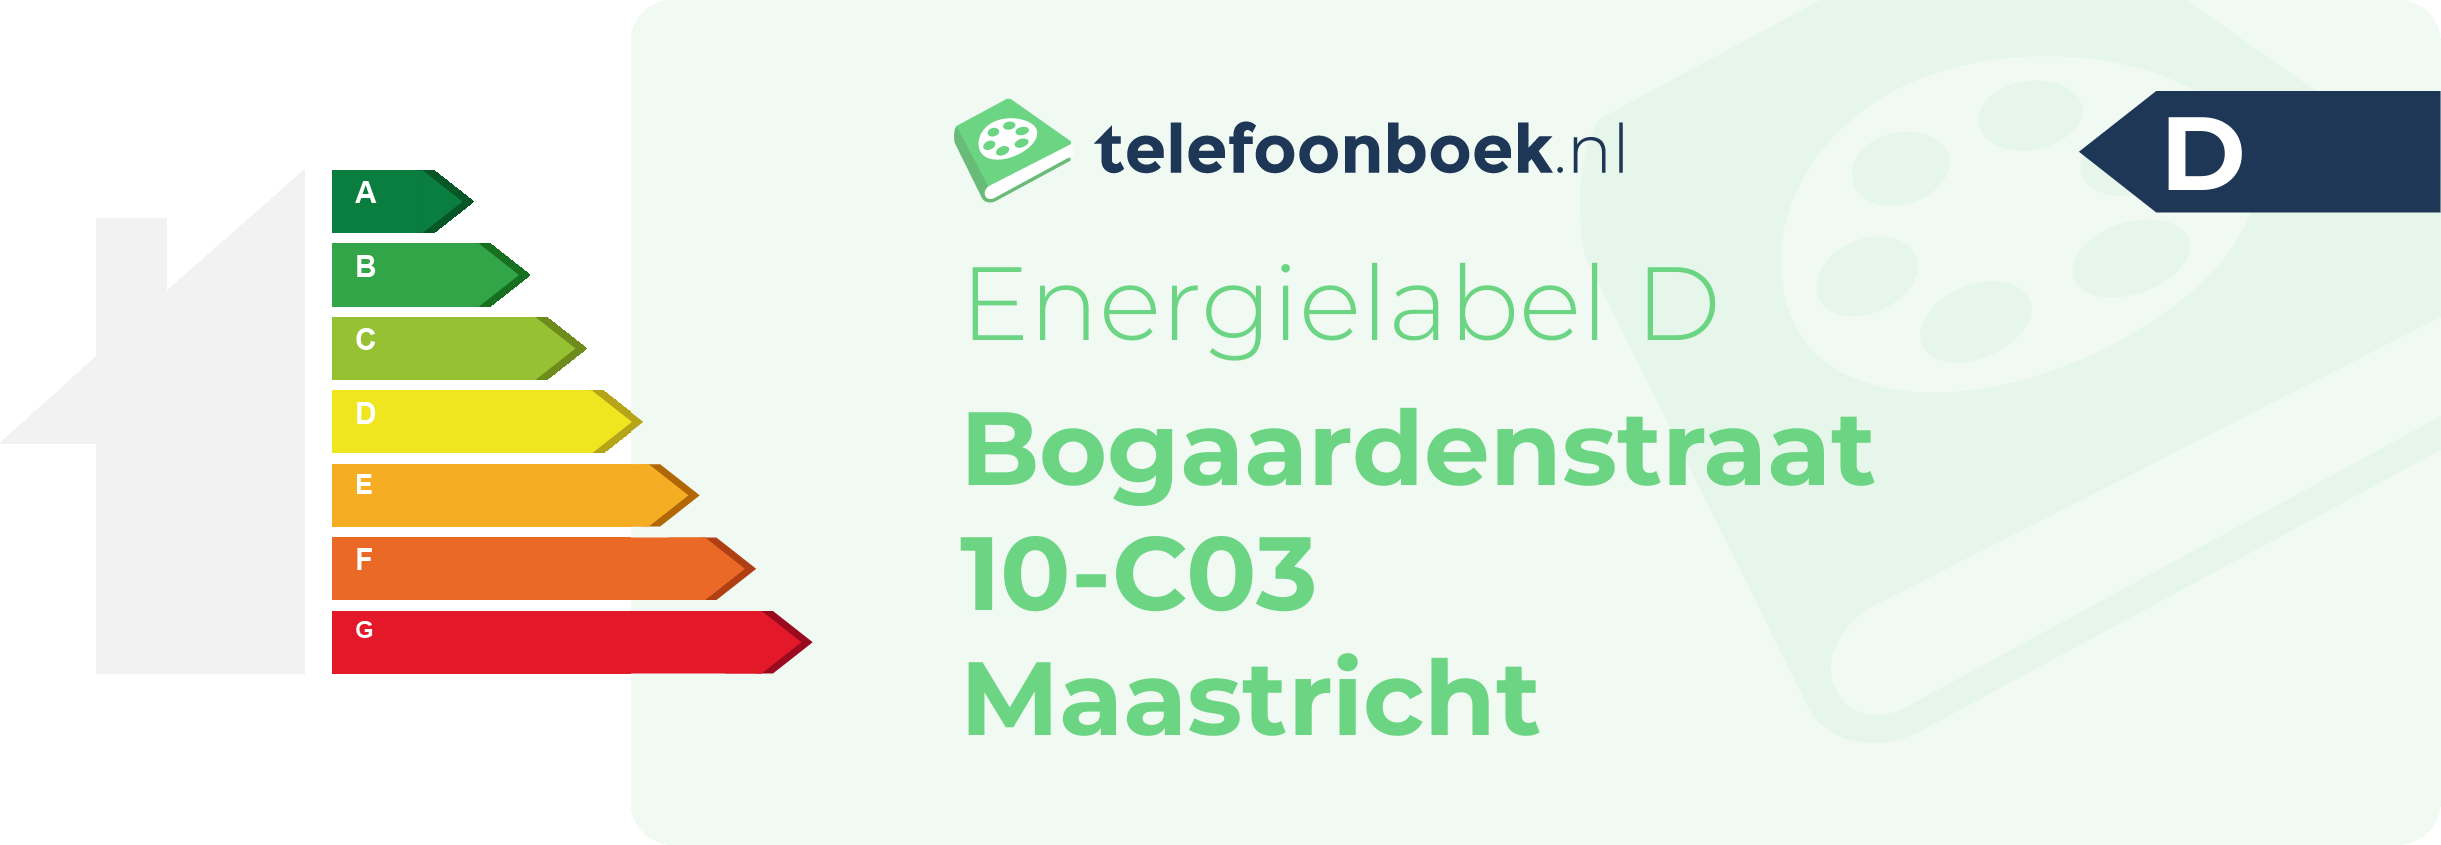 Energielabel Bogaardenstraat 10-C03 Maastricht